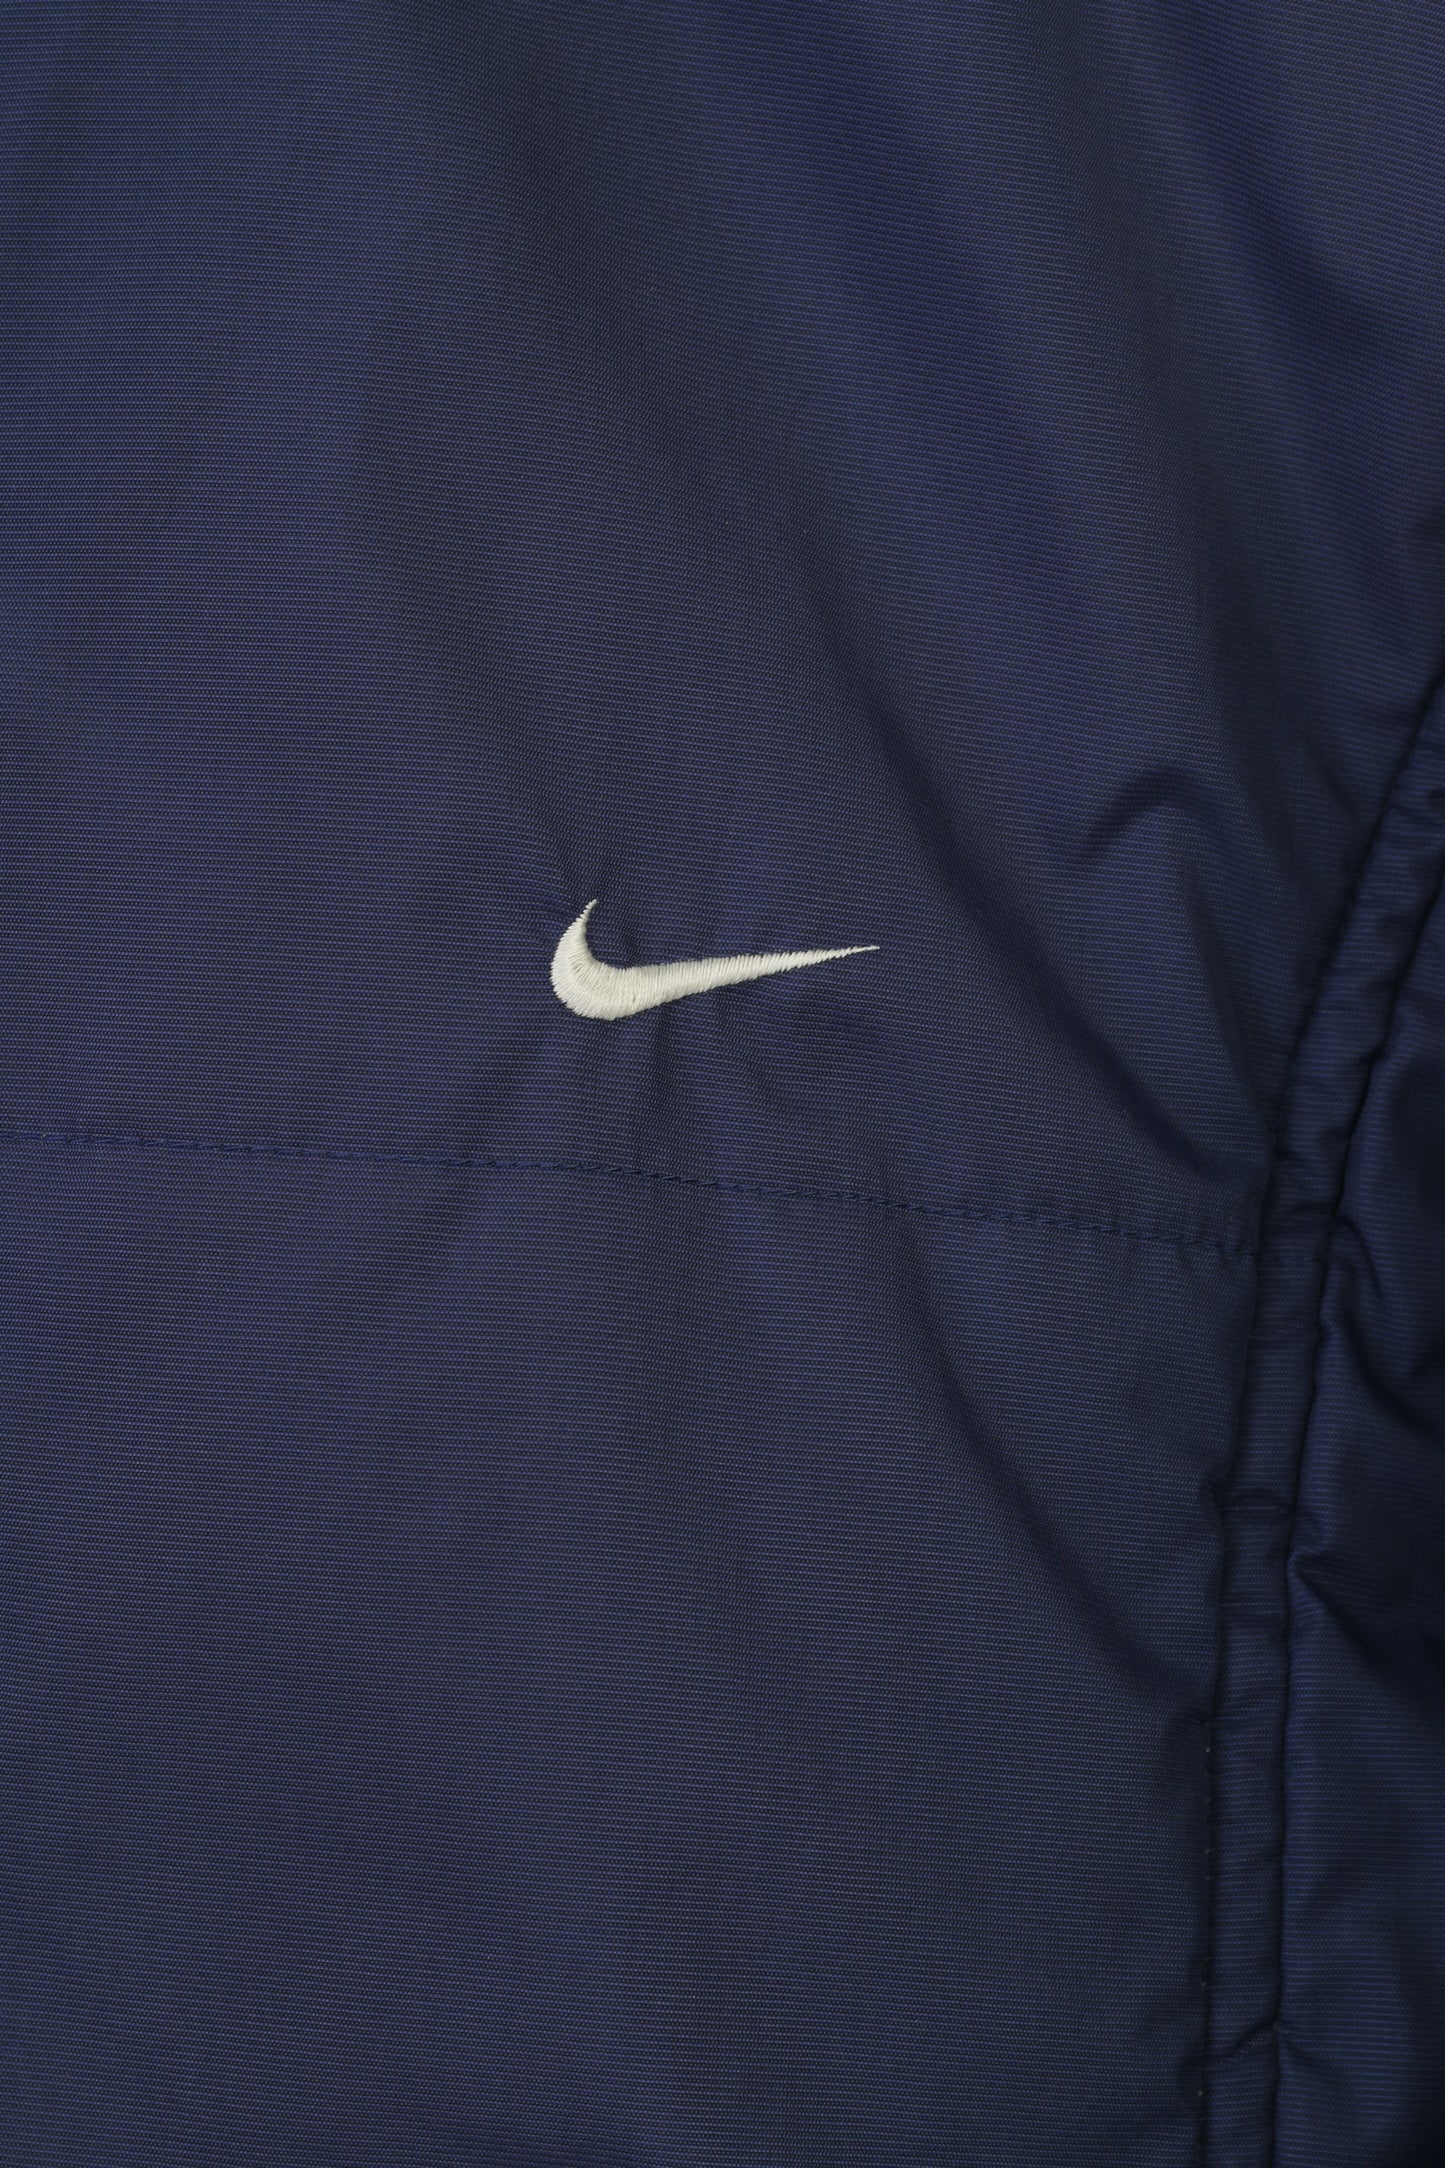 Giacca Nike da donna M blu scuro con cerniera intera sportiva imbottita con colletto vintage